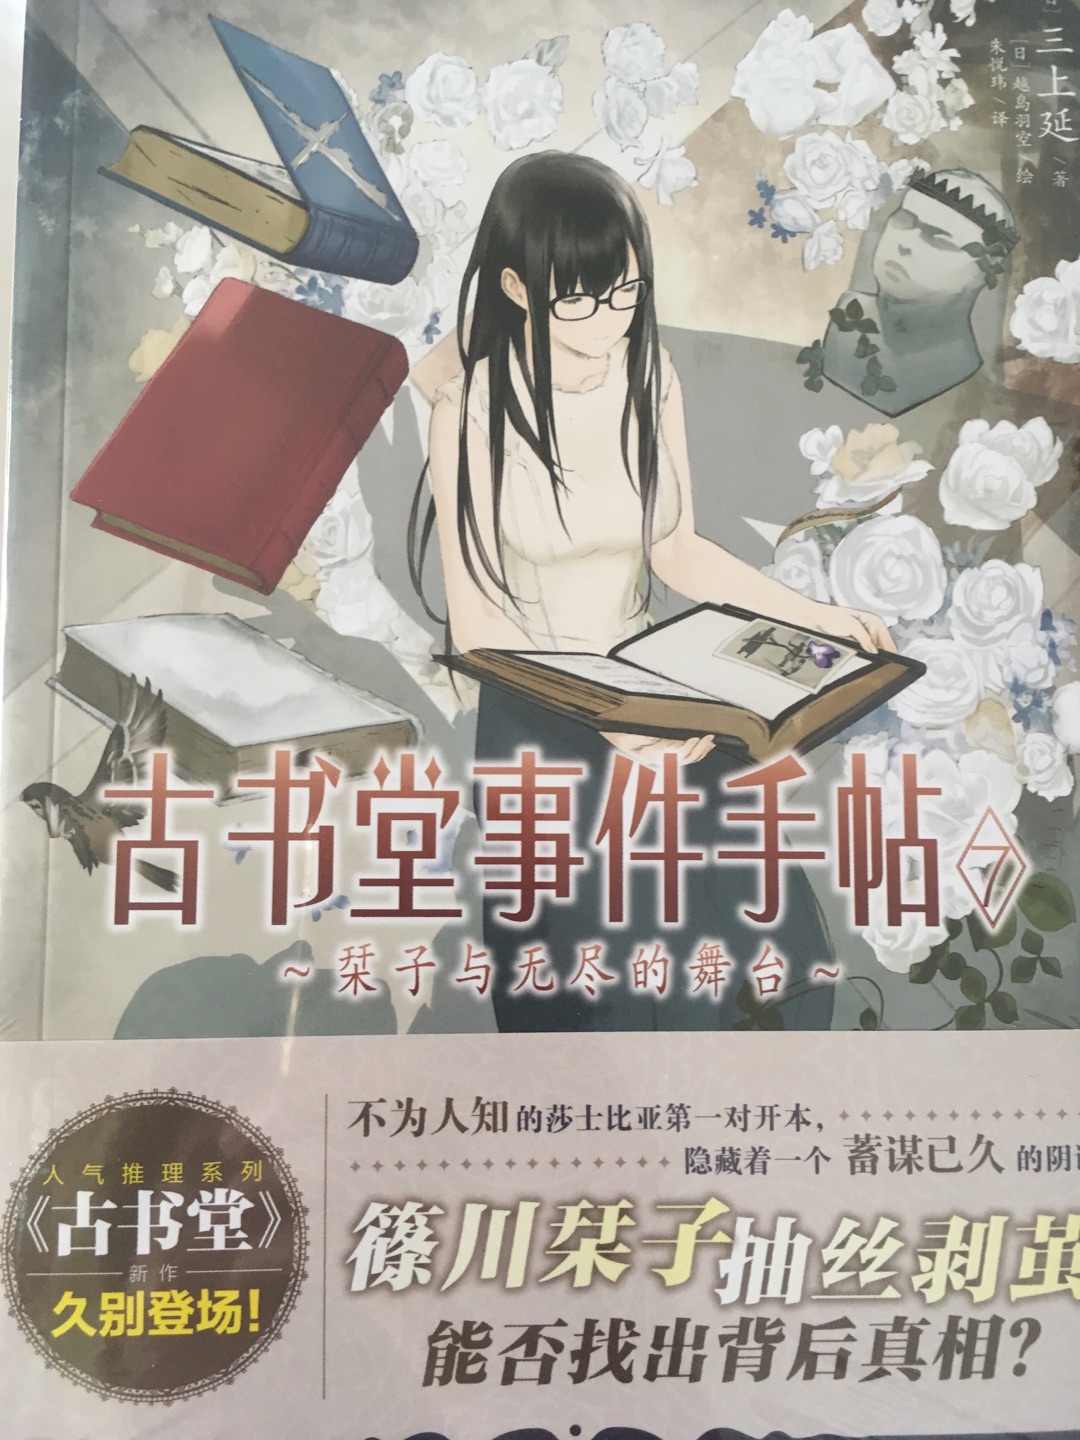 完结篇。年初日文原版就发行了，现在11月简体中文版才发行。追了好几年，今年终于完结了，赞！